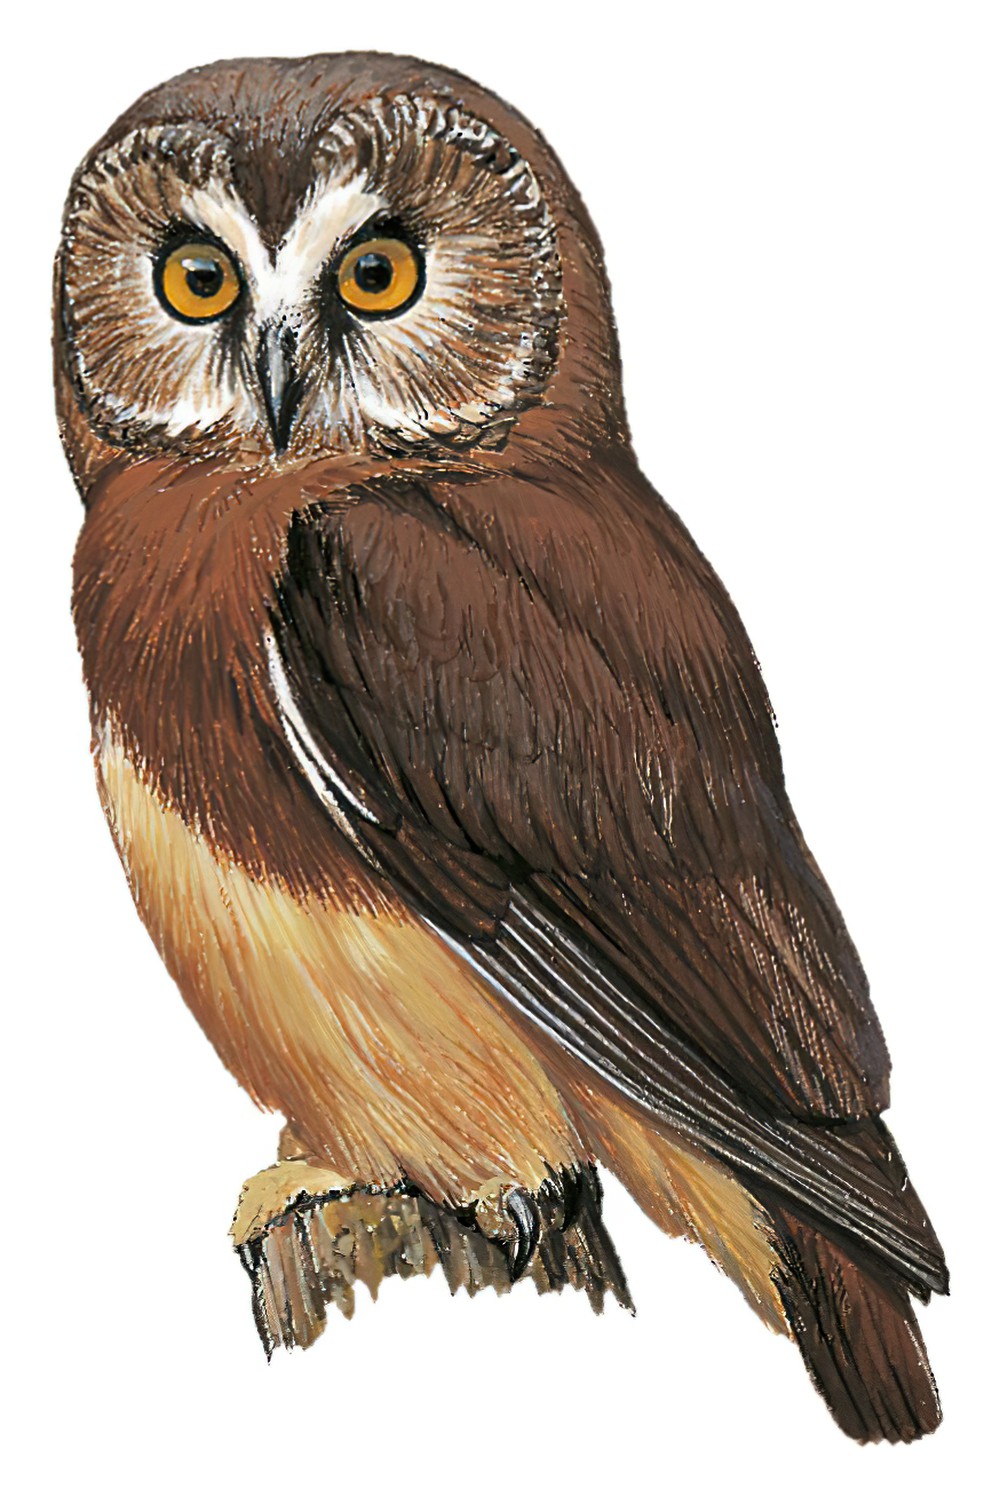 Unspotted Saw-whet Owl / Aegolius ridgwayi